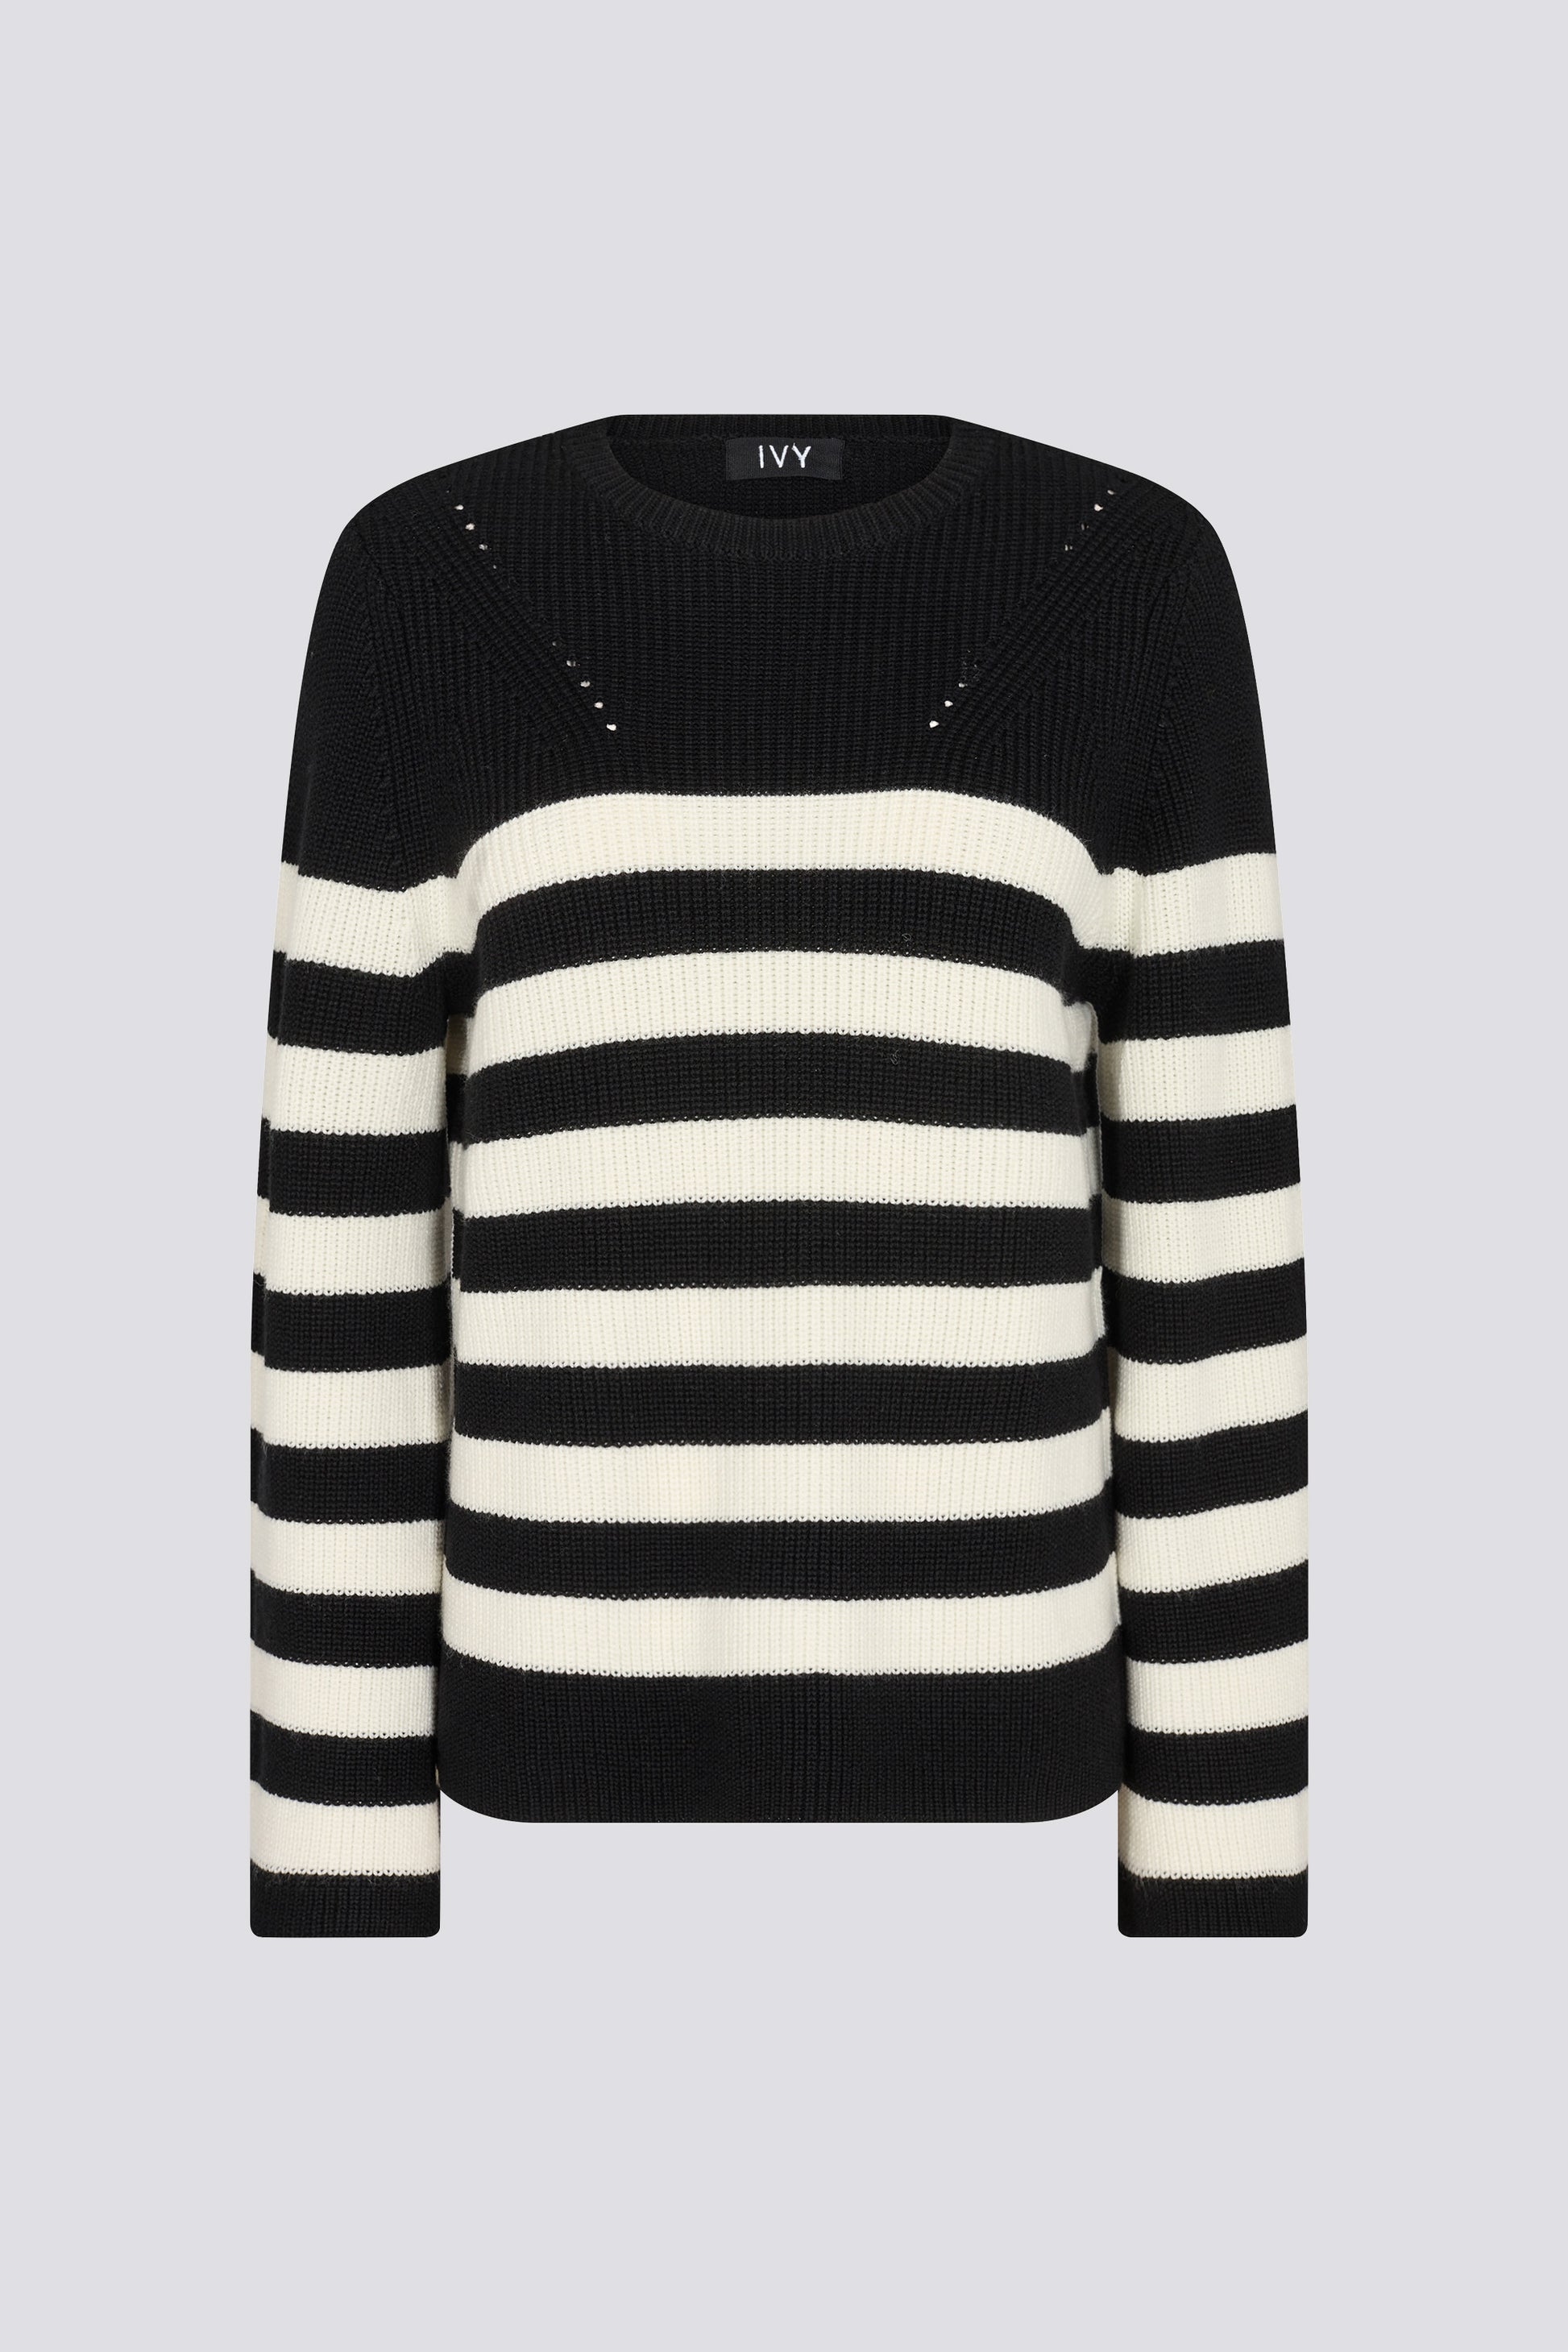 IVY Copenhagen IVY-Patti Striped Knit Knitwear 9 Black